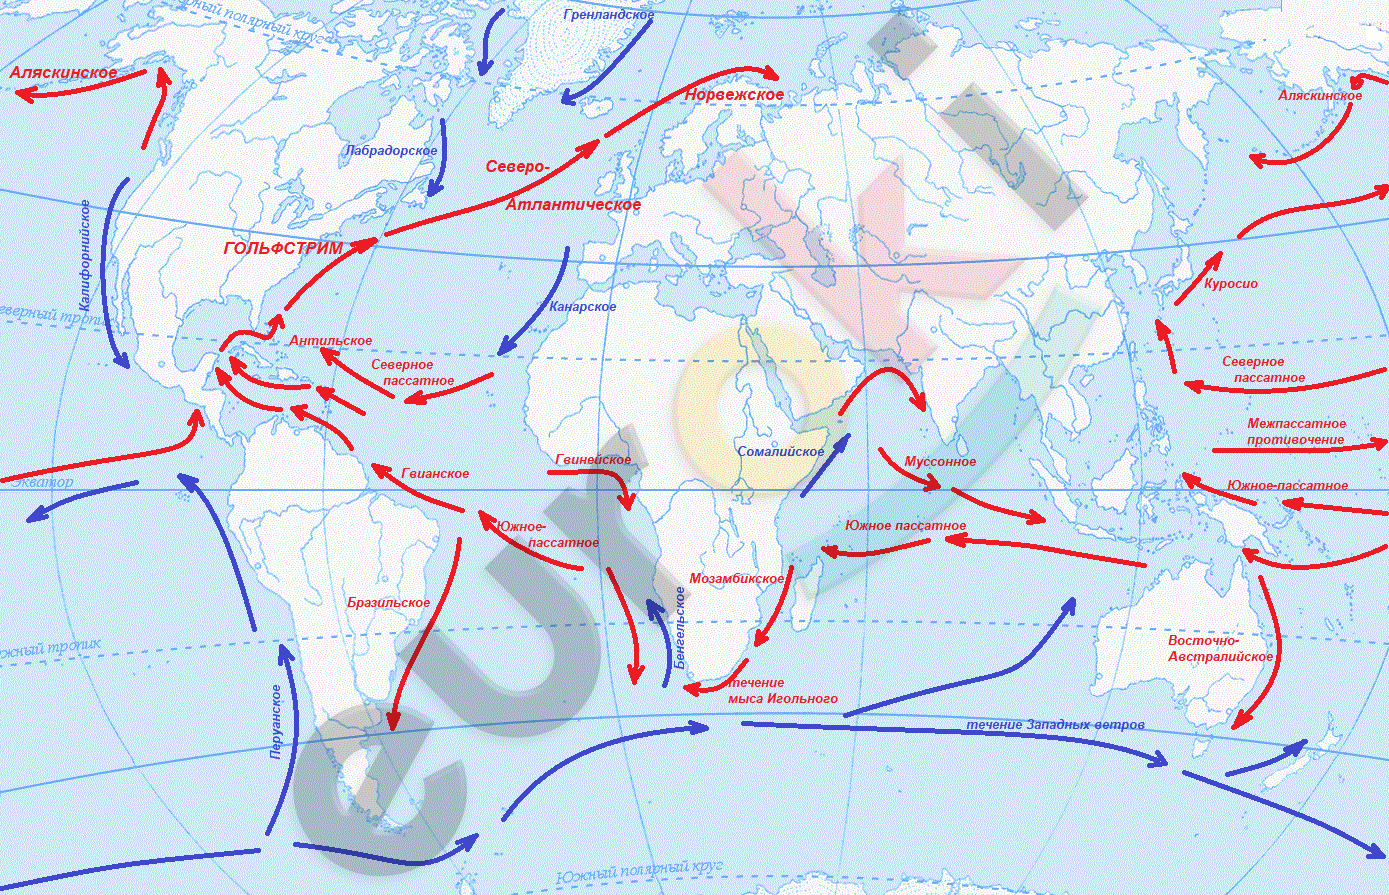 Течение южных ветров. Лабрадорское течение на карте. Канарское течение на карте. Северо-атлантическое течение на карте. Течение западных ветров на карте.